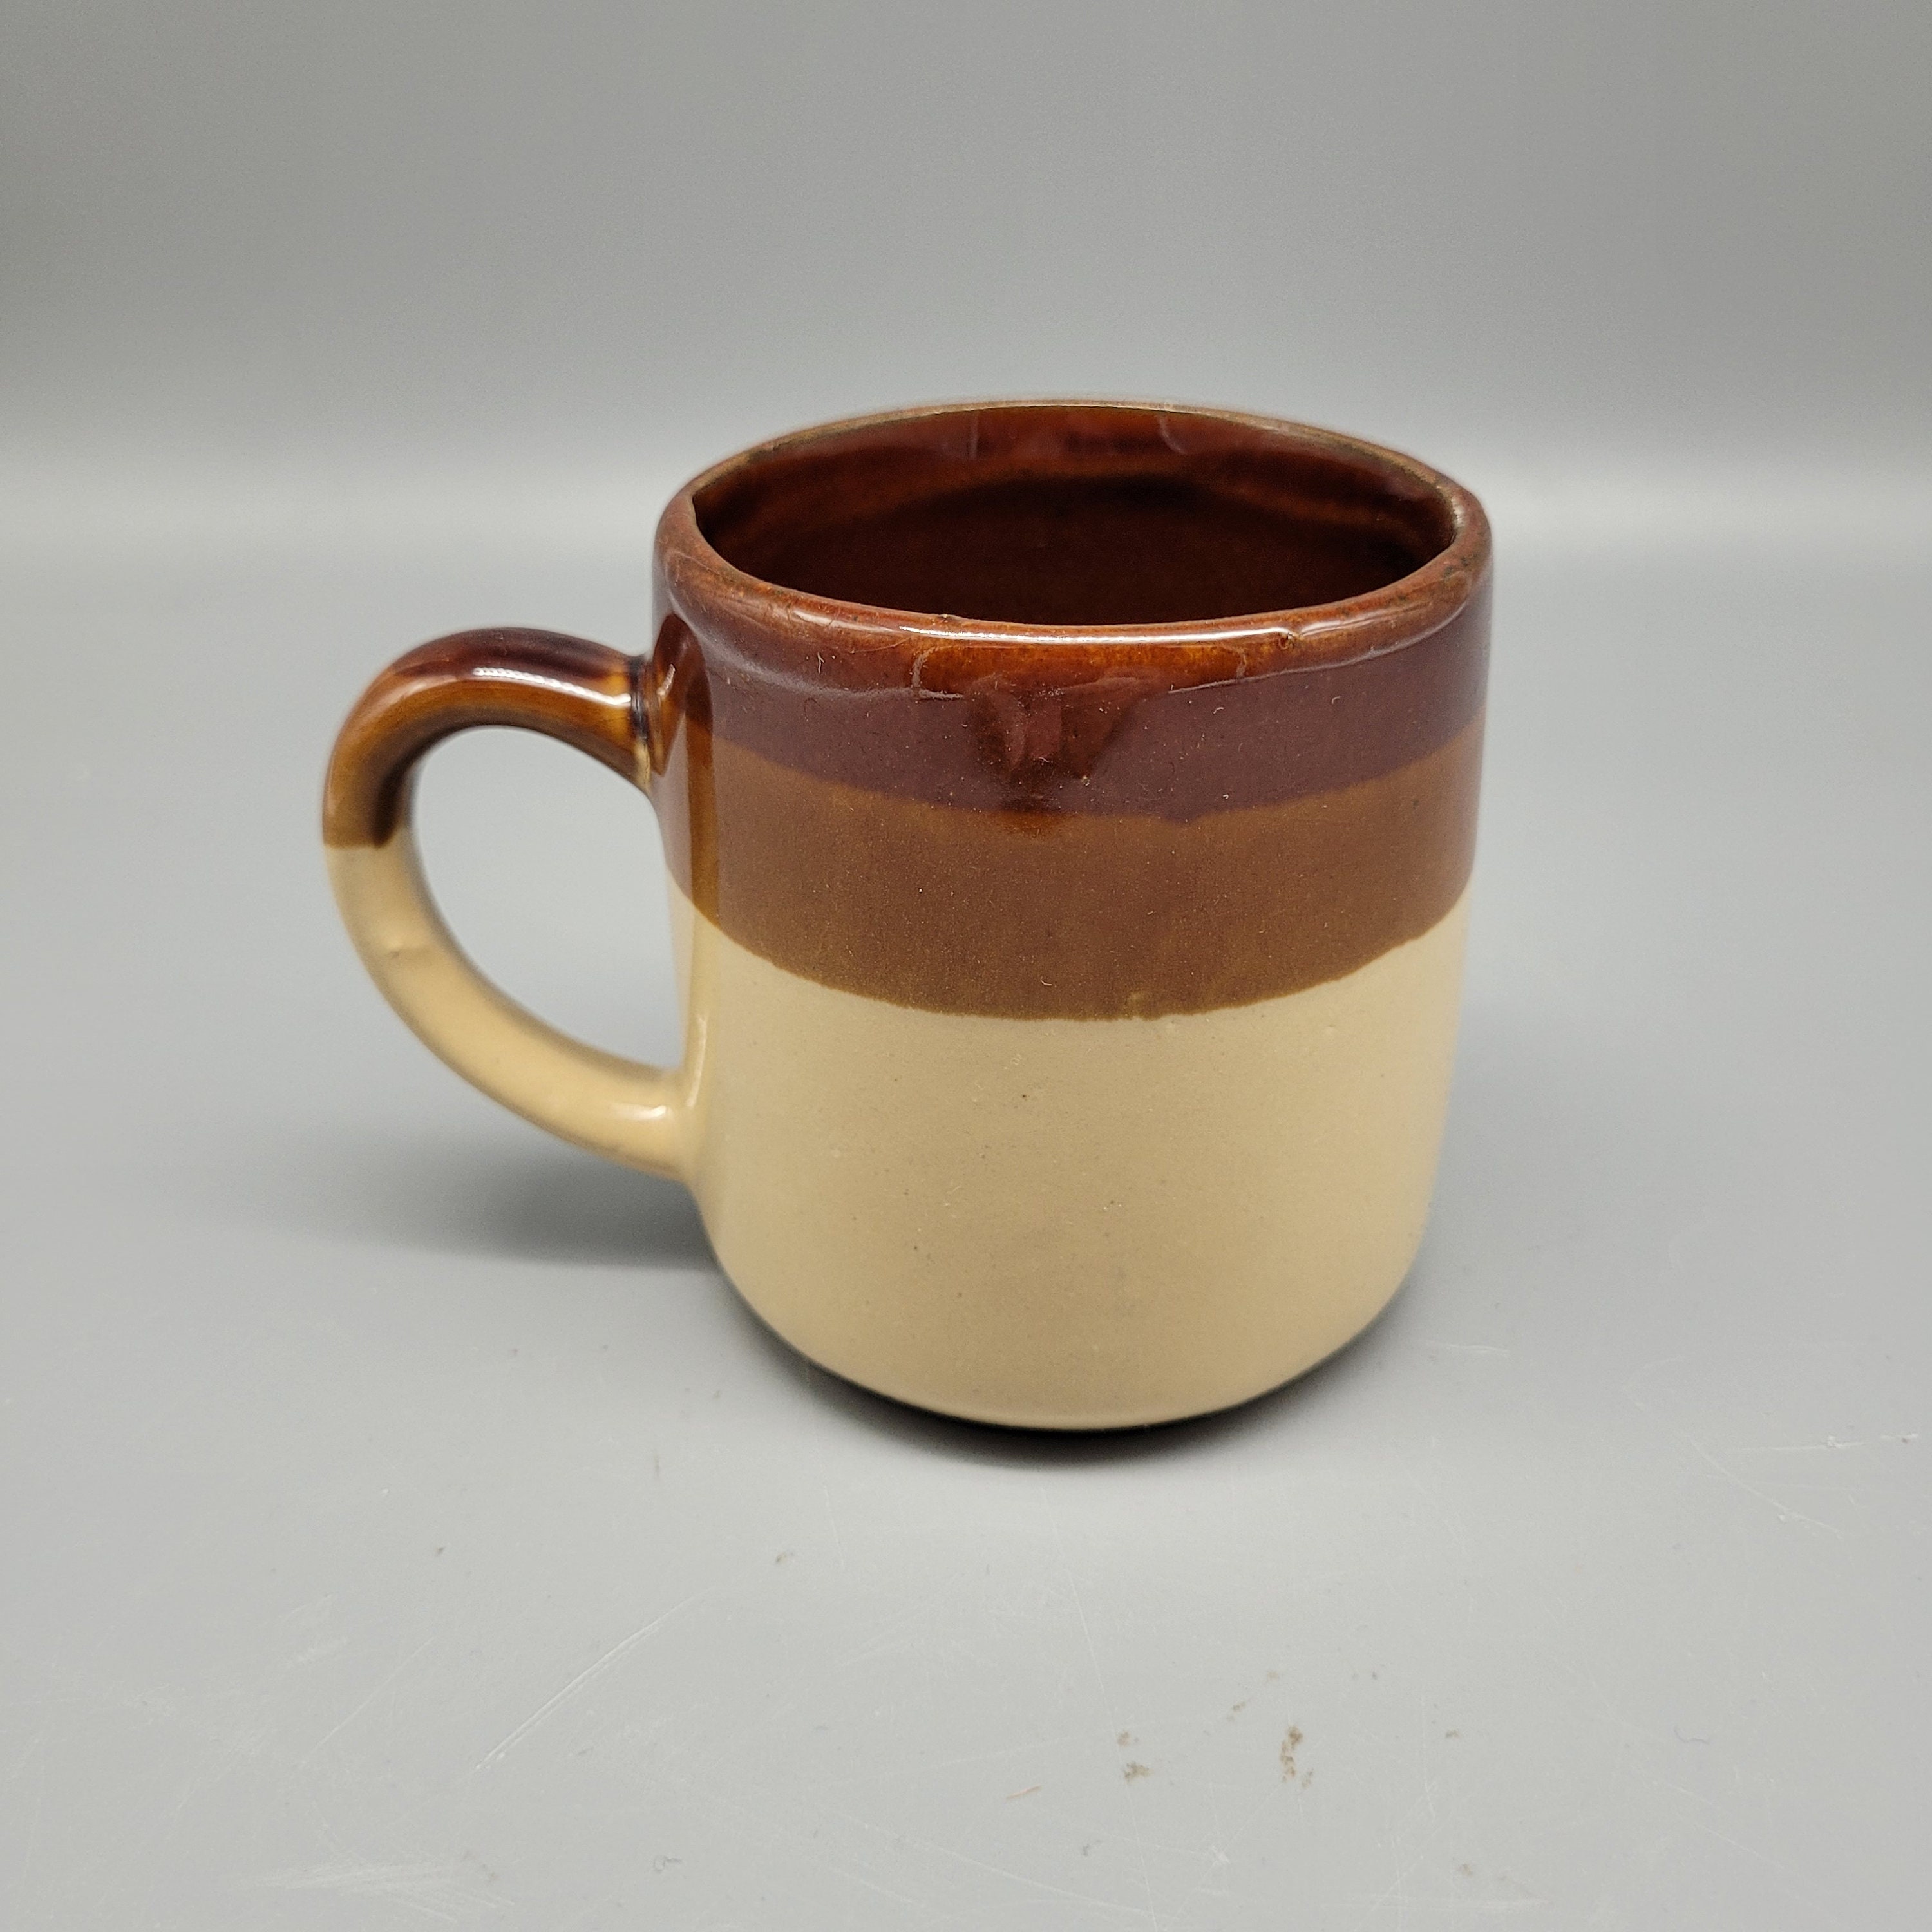 Vintage Georgia Ceramic No-spill Mug Cream Crackle Glaze 